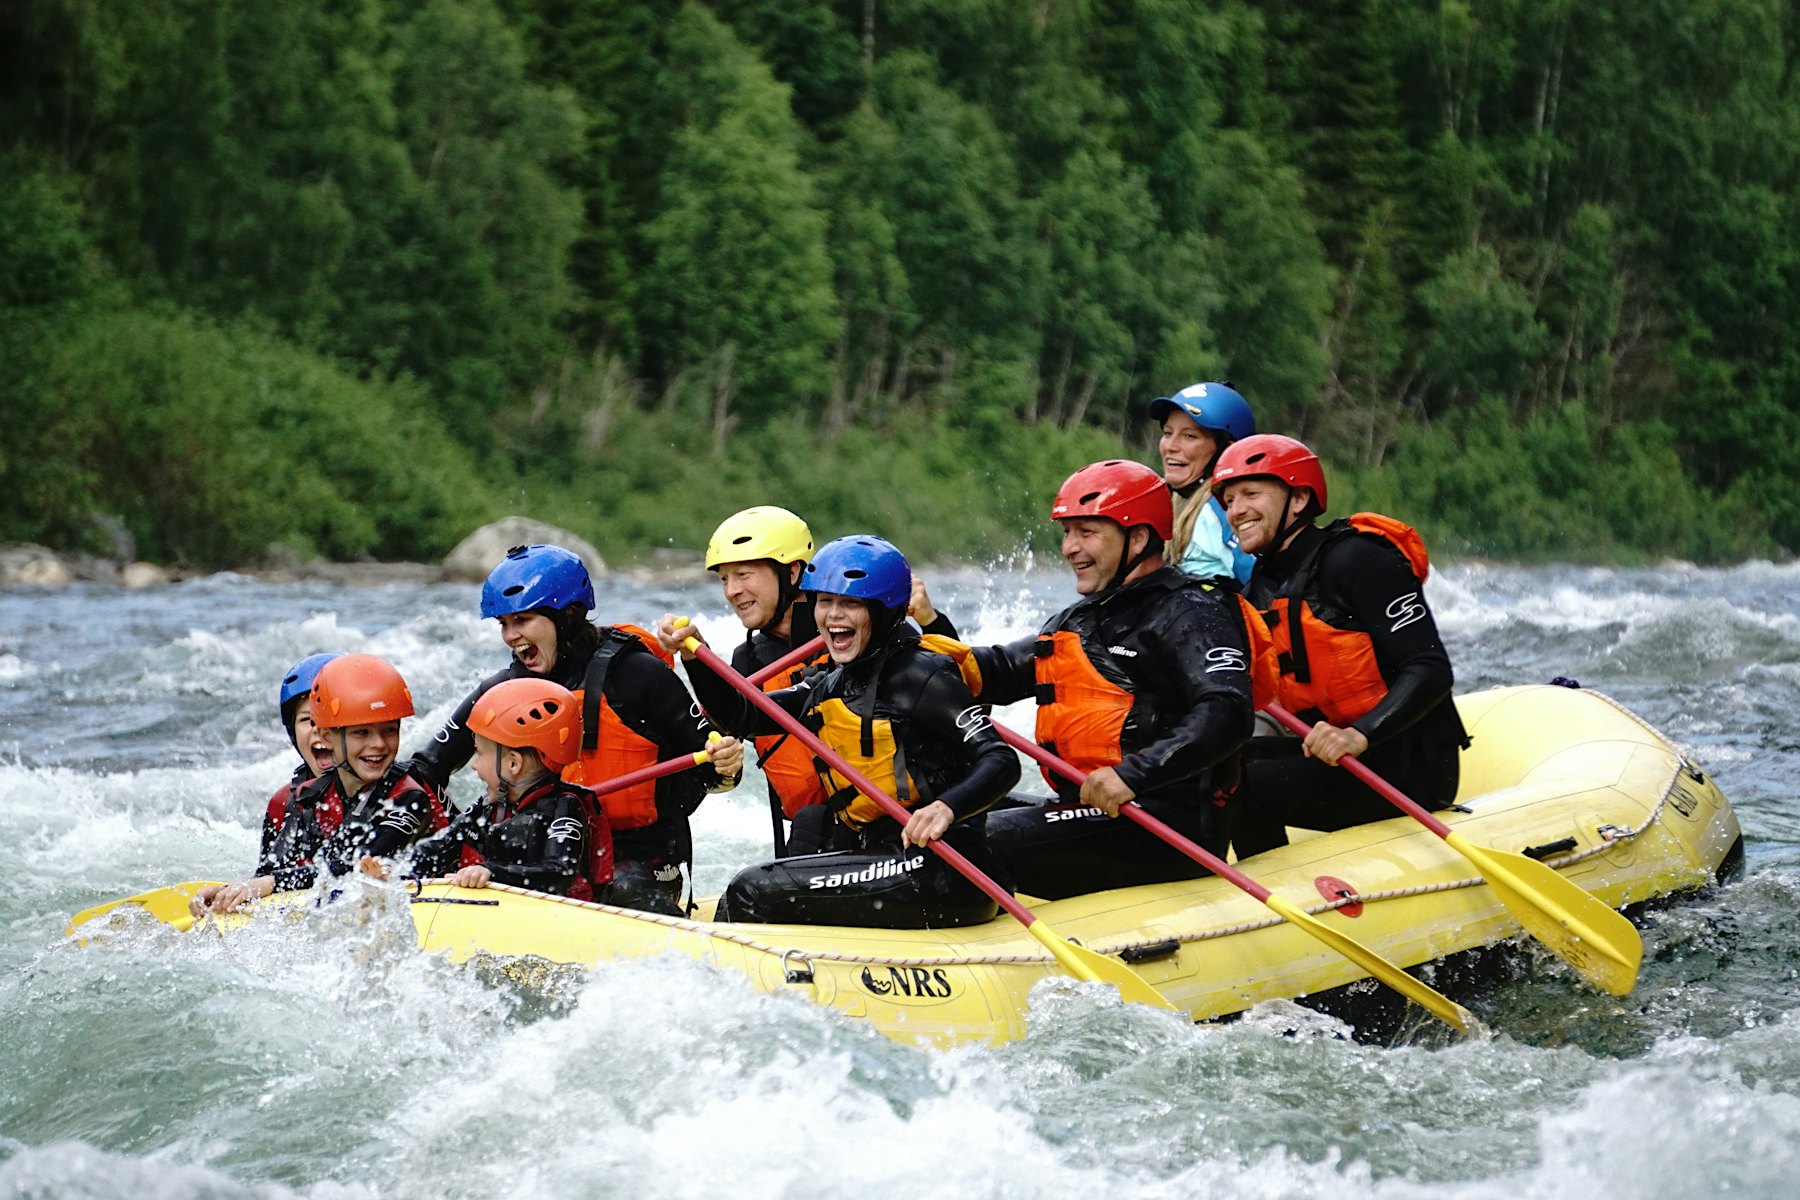 Große Gruppe, die in einem Boot sitzt und in einem Fluss raftet, während sie lacht und lächelt. Foto